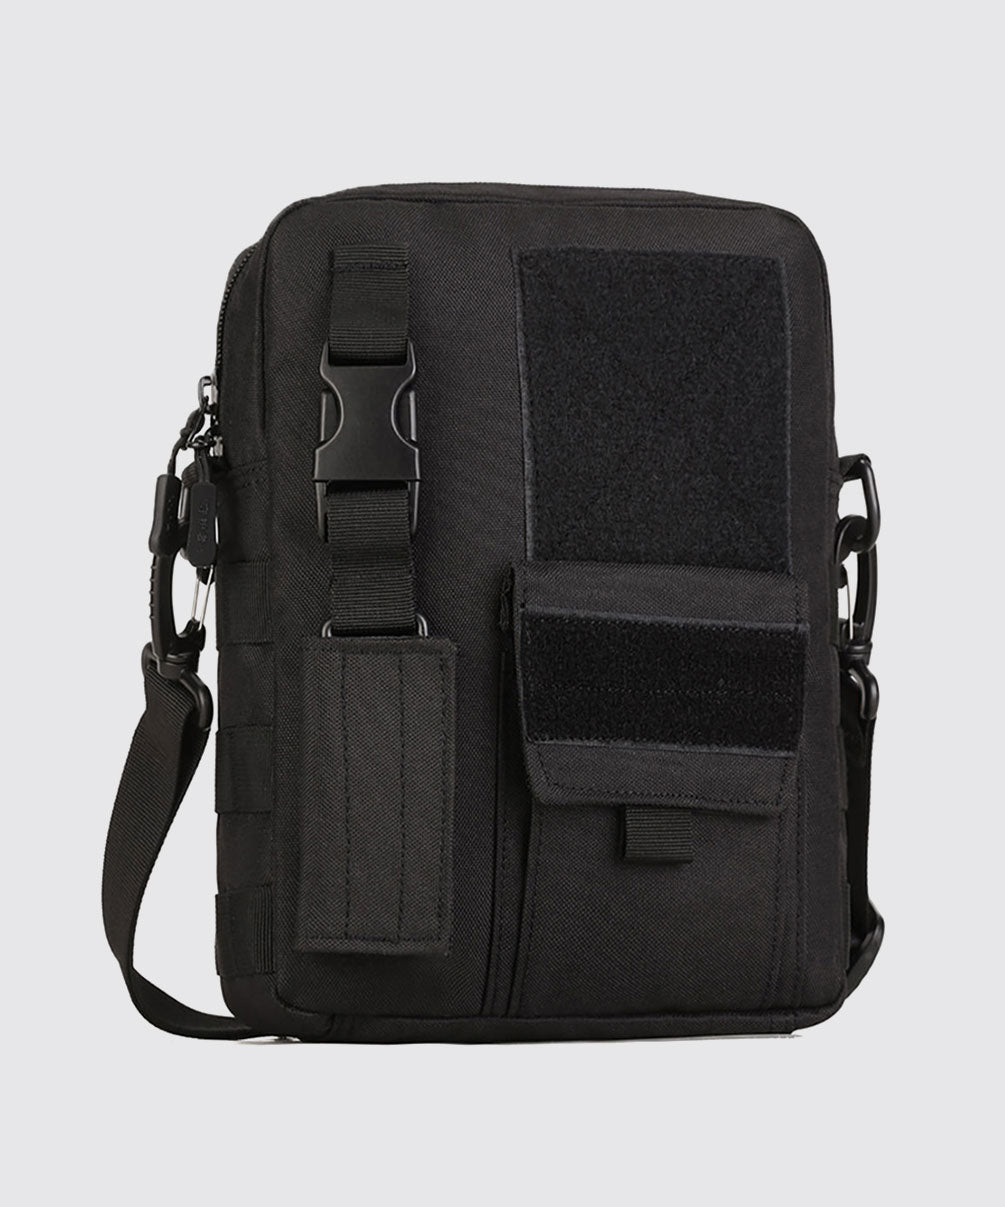 Tiger Tactical Shoulder Sling Bag Large Black For Travel